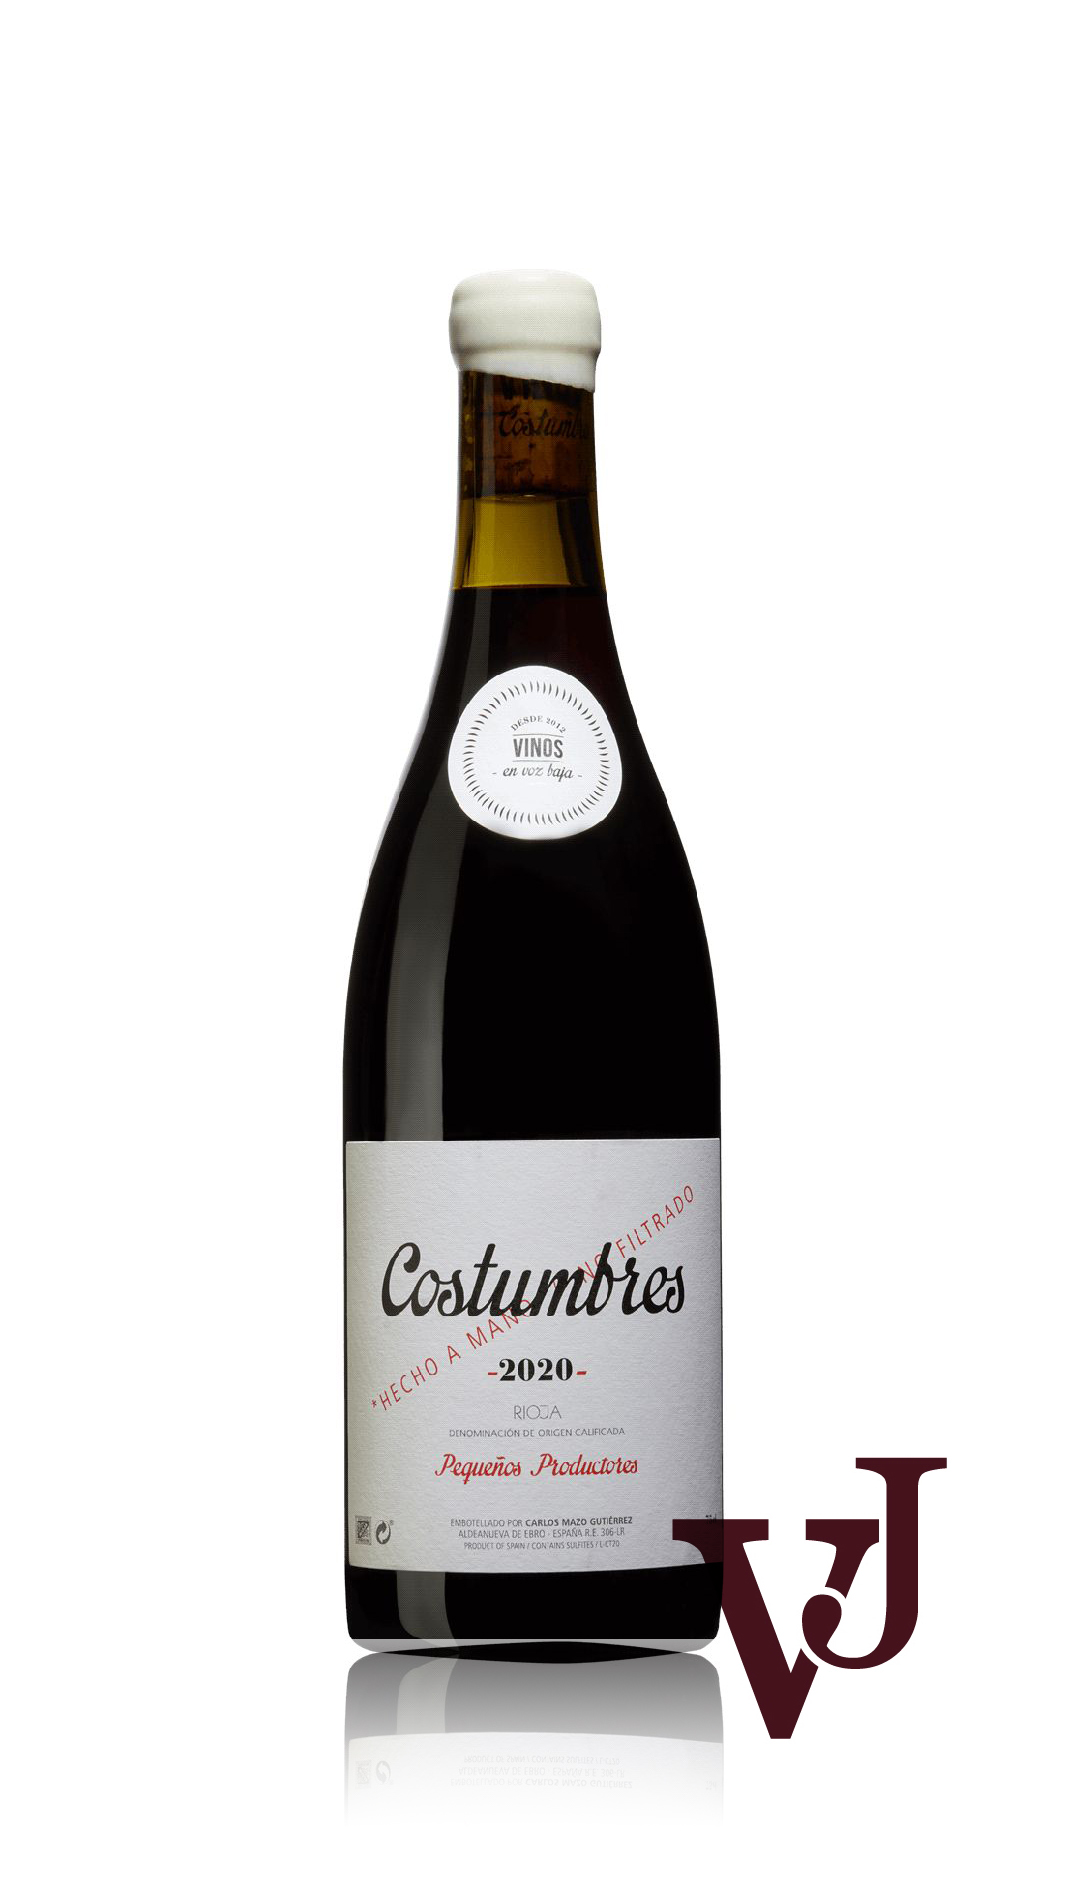 Rött Vin - Costumbres Tinto Vinos en Voz Baja 2020 artikel nummer 9256001 från producenten Vinos en Voz Baja från Spanien